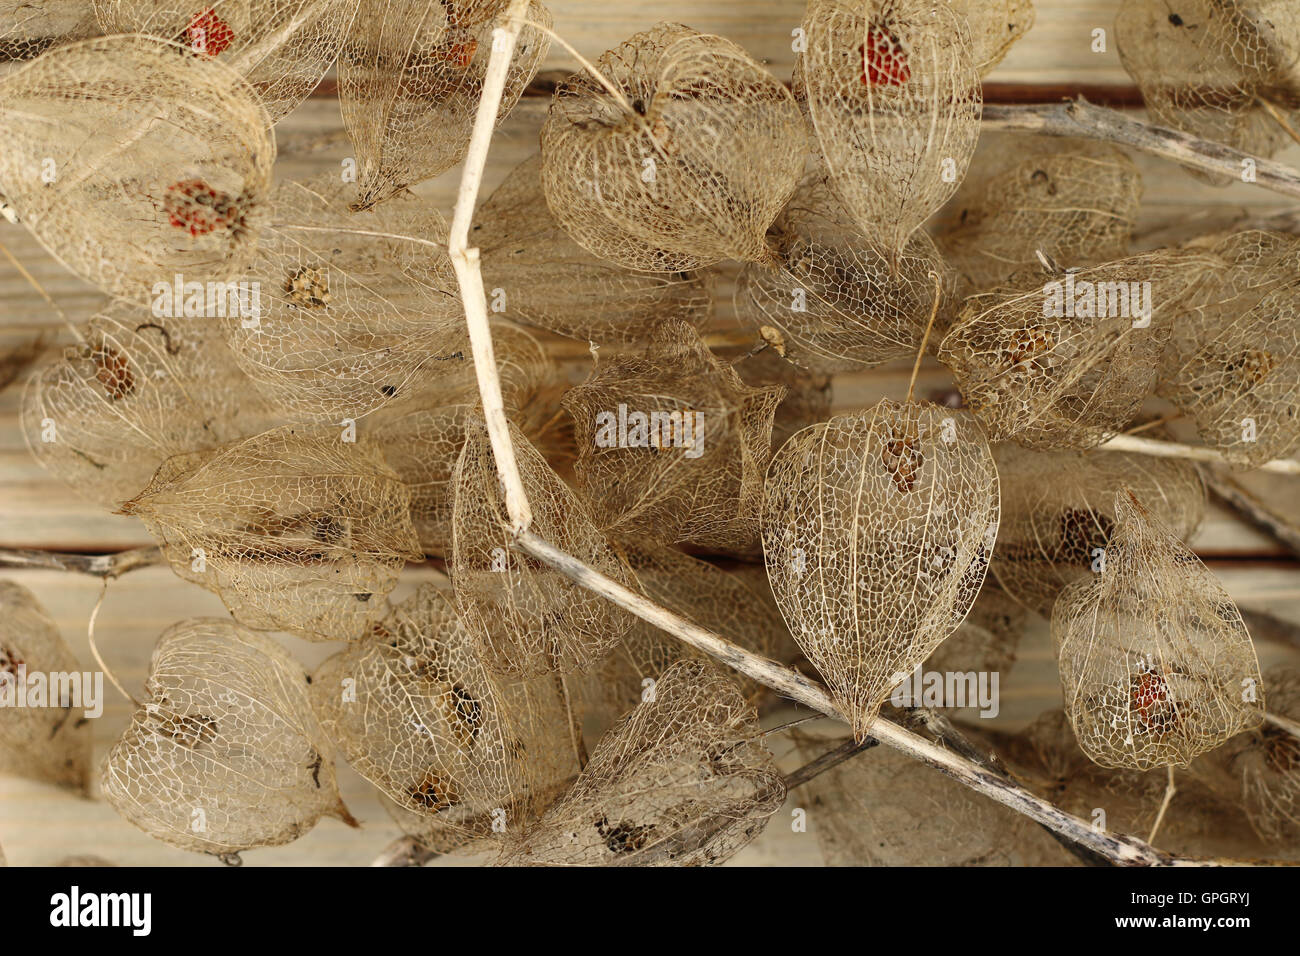 Los frutos secos de la uchuva en placa de madera Foto de stock